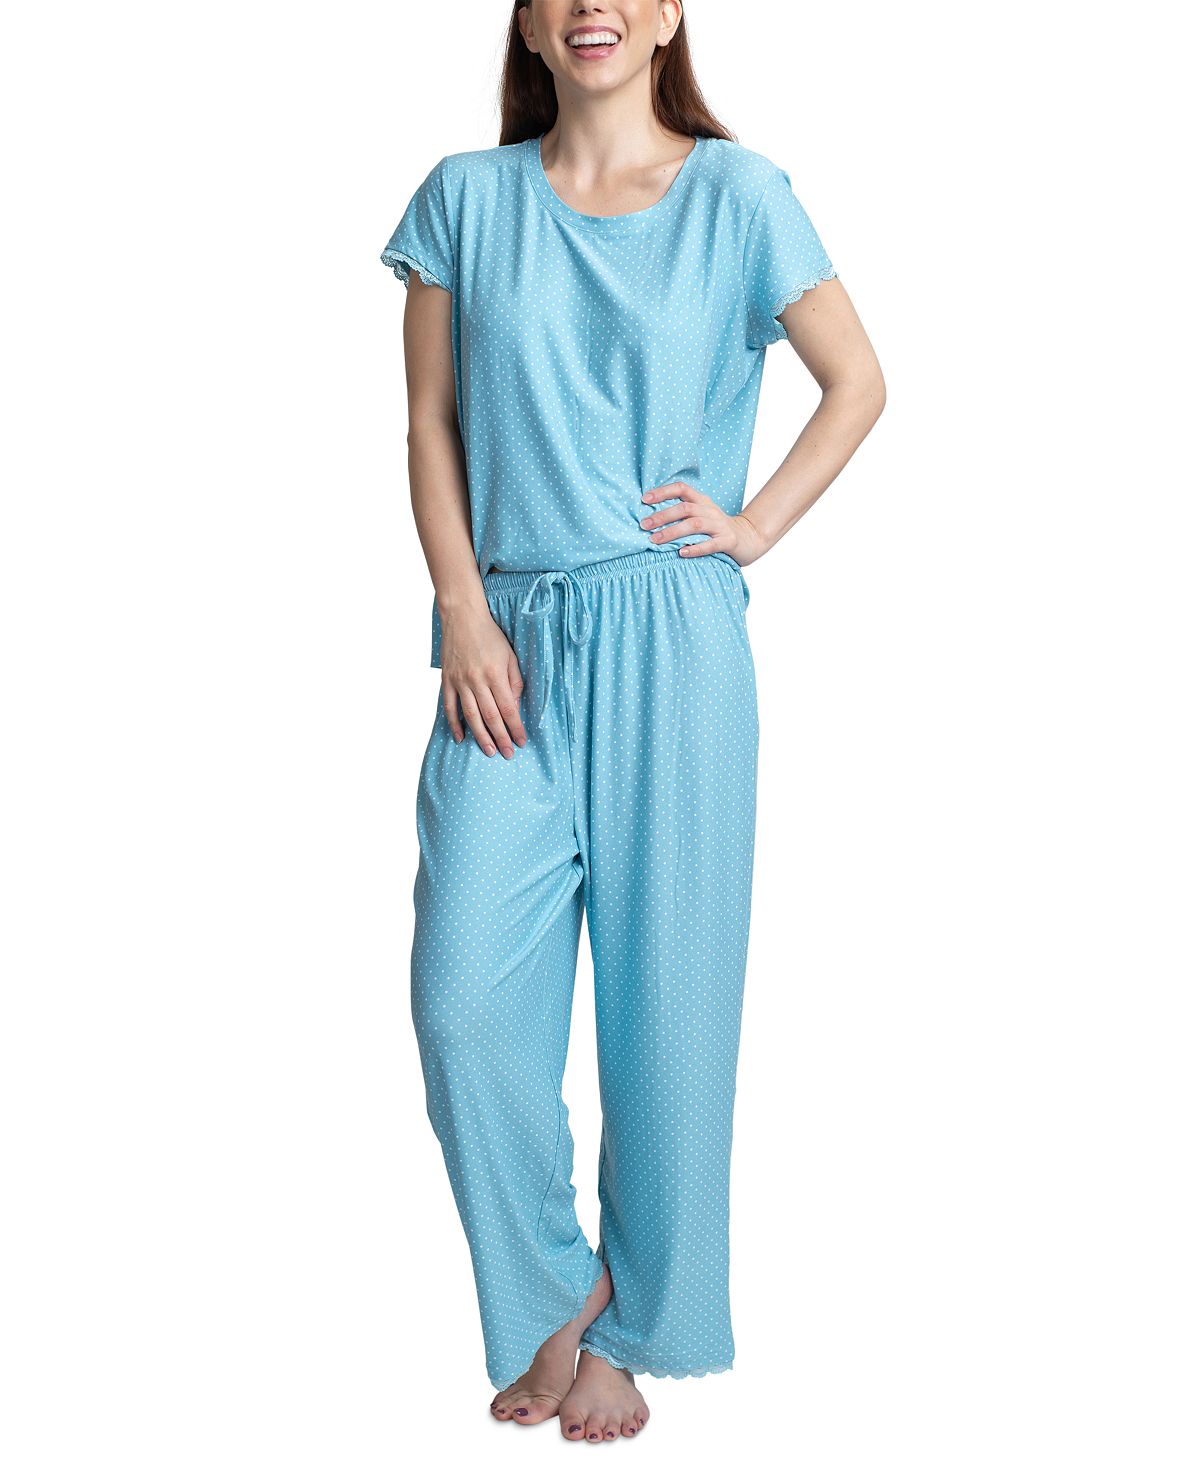 Muk Luks Lace-trim Printed Pajama Set White Dot